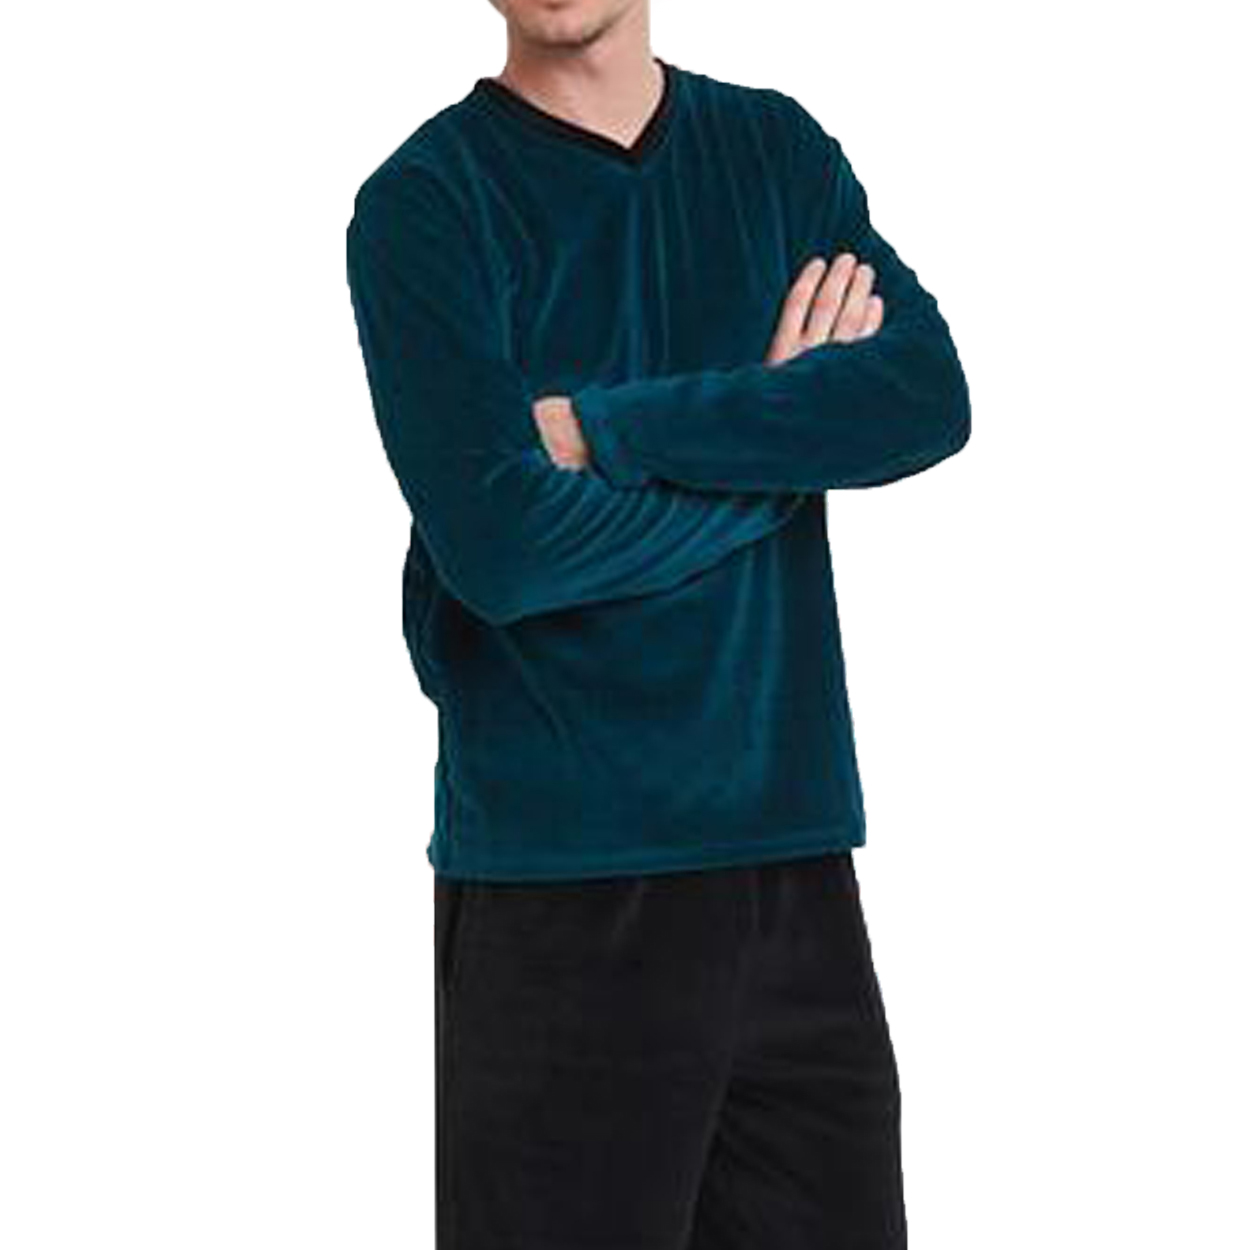 Pyjama long Arthur Slalom en velours: tee-shirt col V manches longues vert sapin à motifs noirs et p